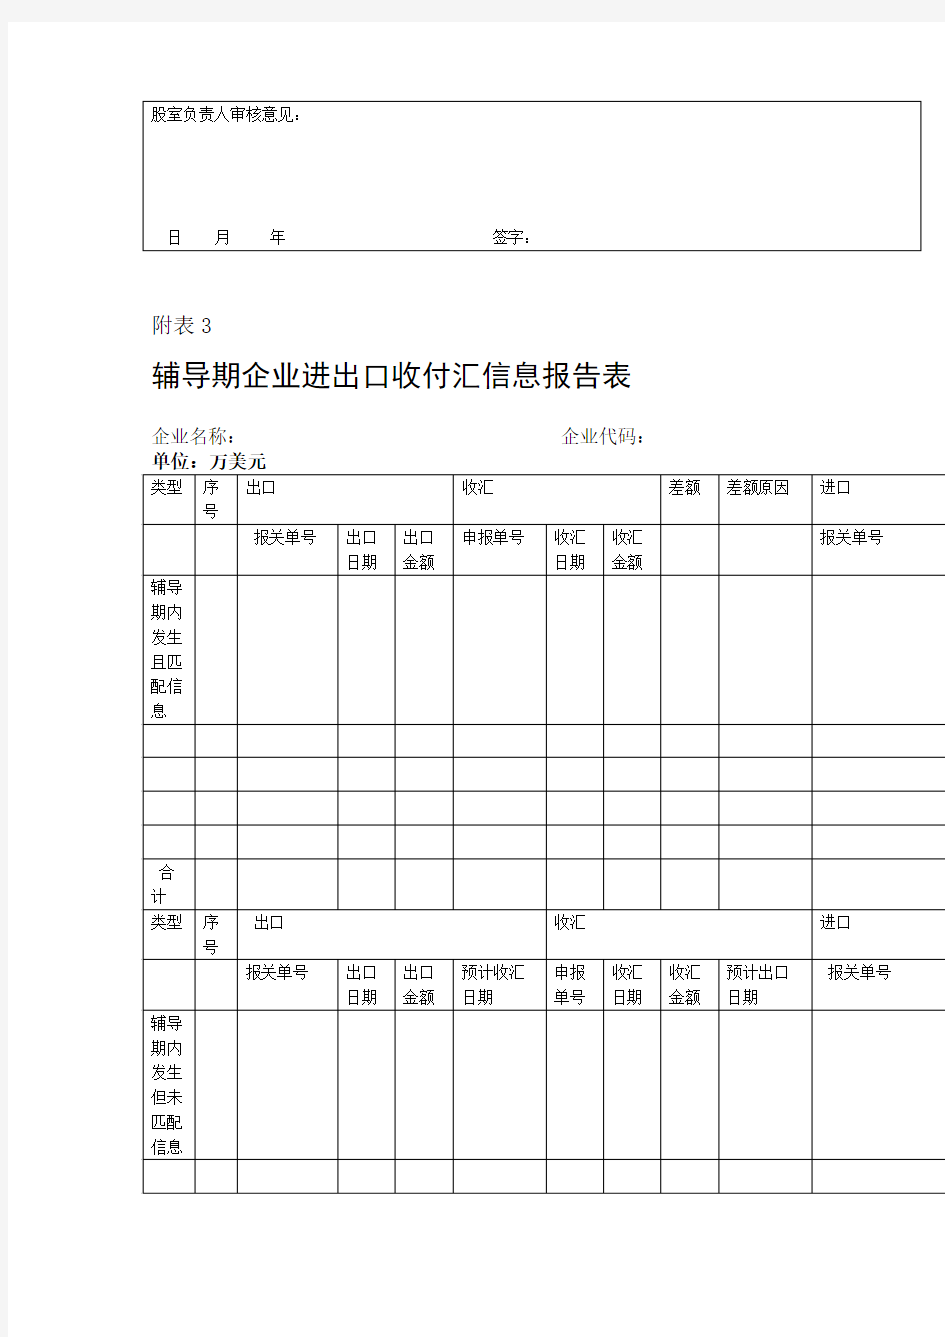 货物贸易外汇业务附表名录登记资料